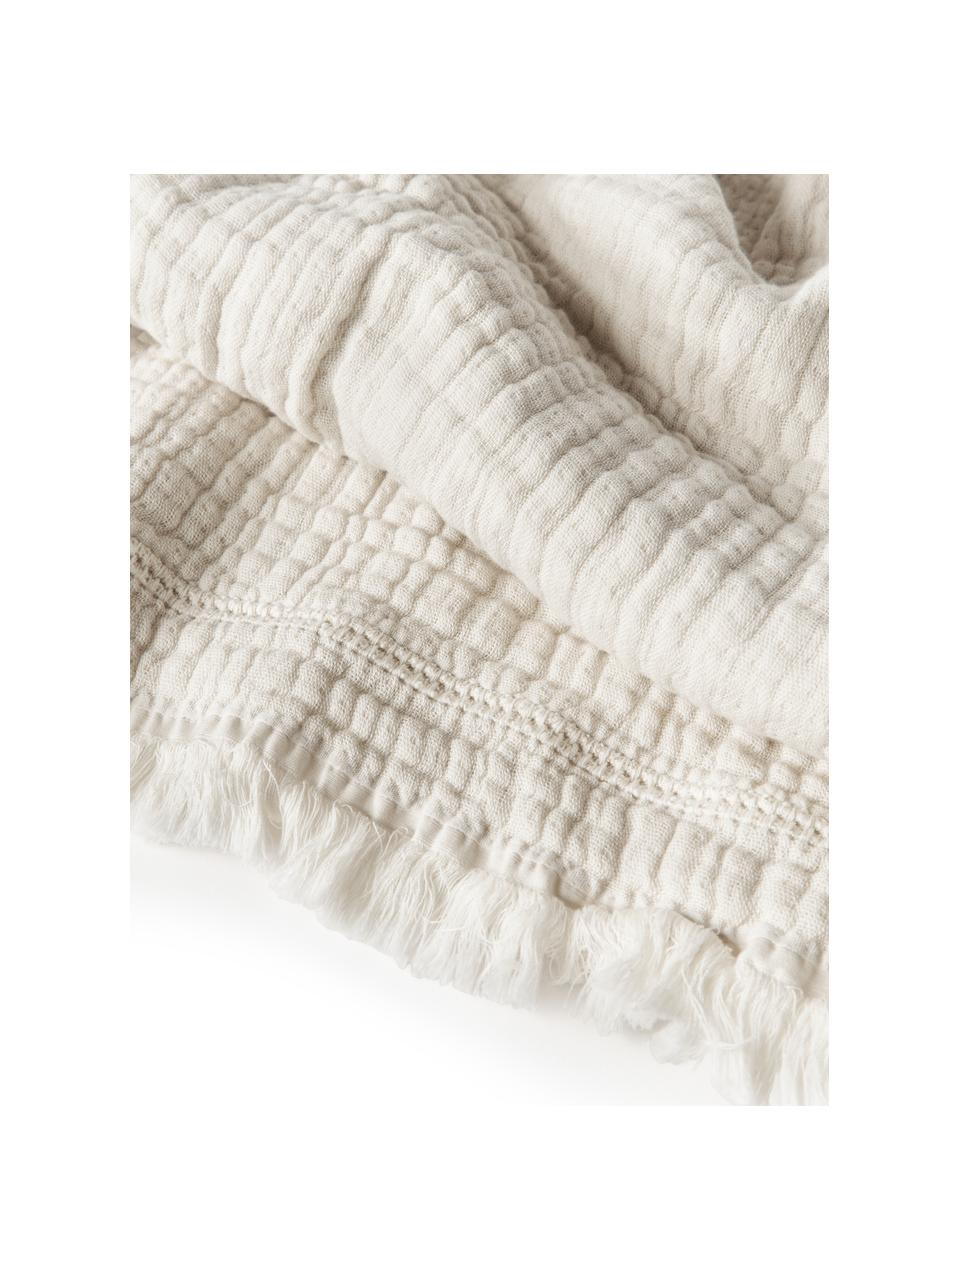 Narzuta z bawełny z frędzlami Kailani, Beżowy, S 180 x D 250 cm